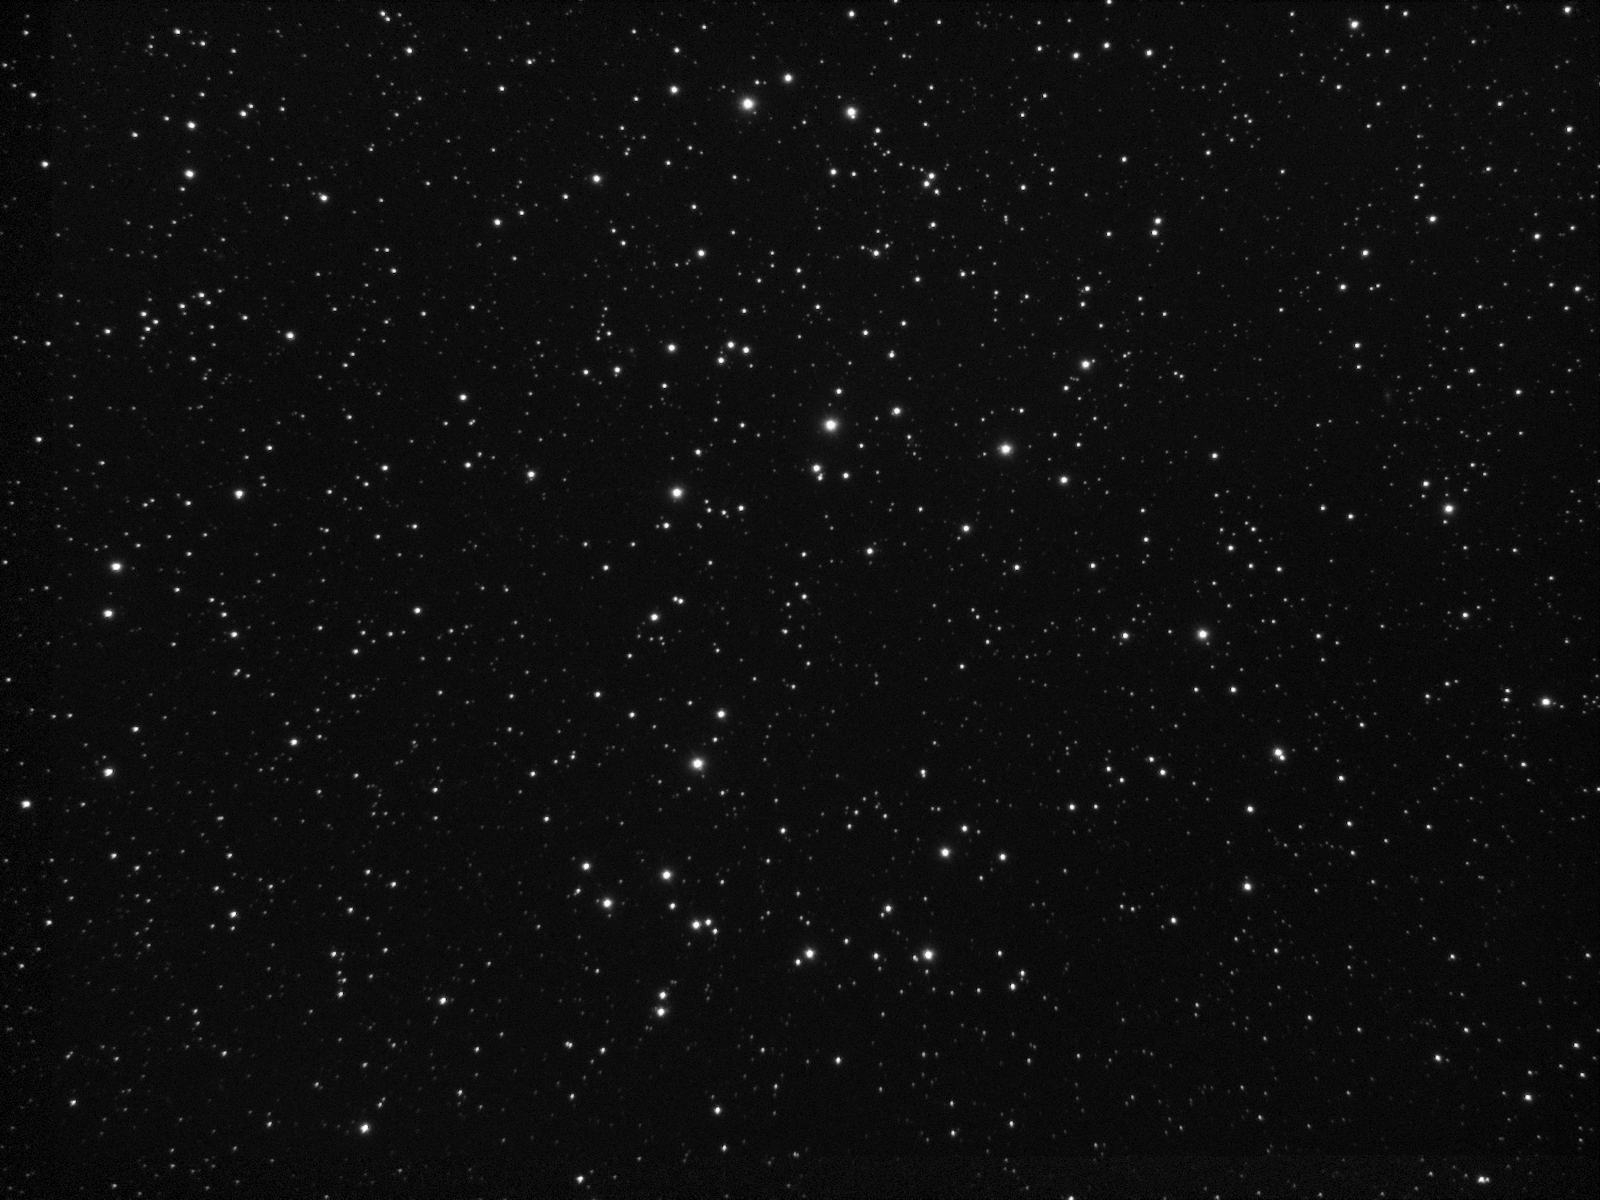 NGC1708_httpsgbruce.home.comcast.net.jpg